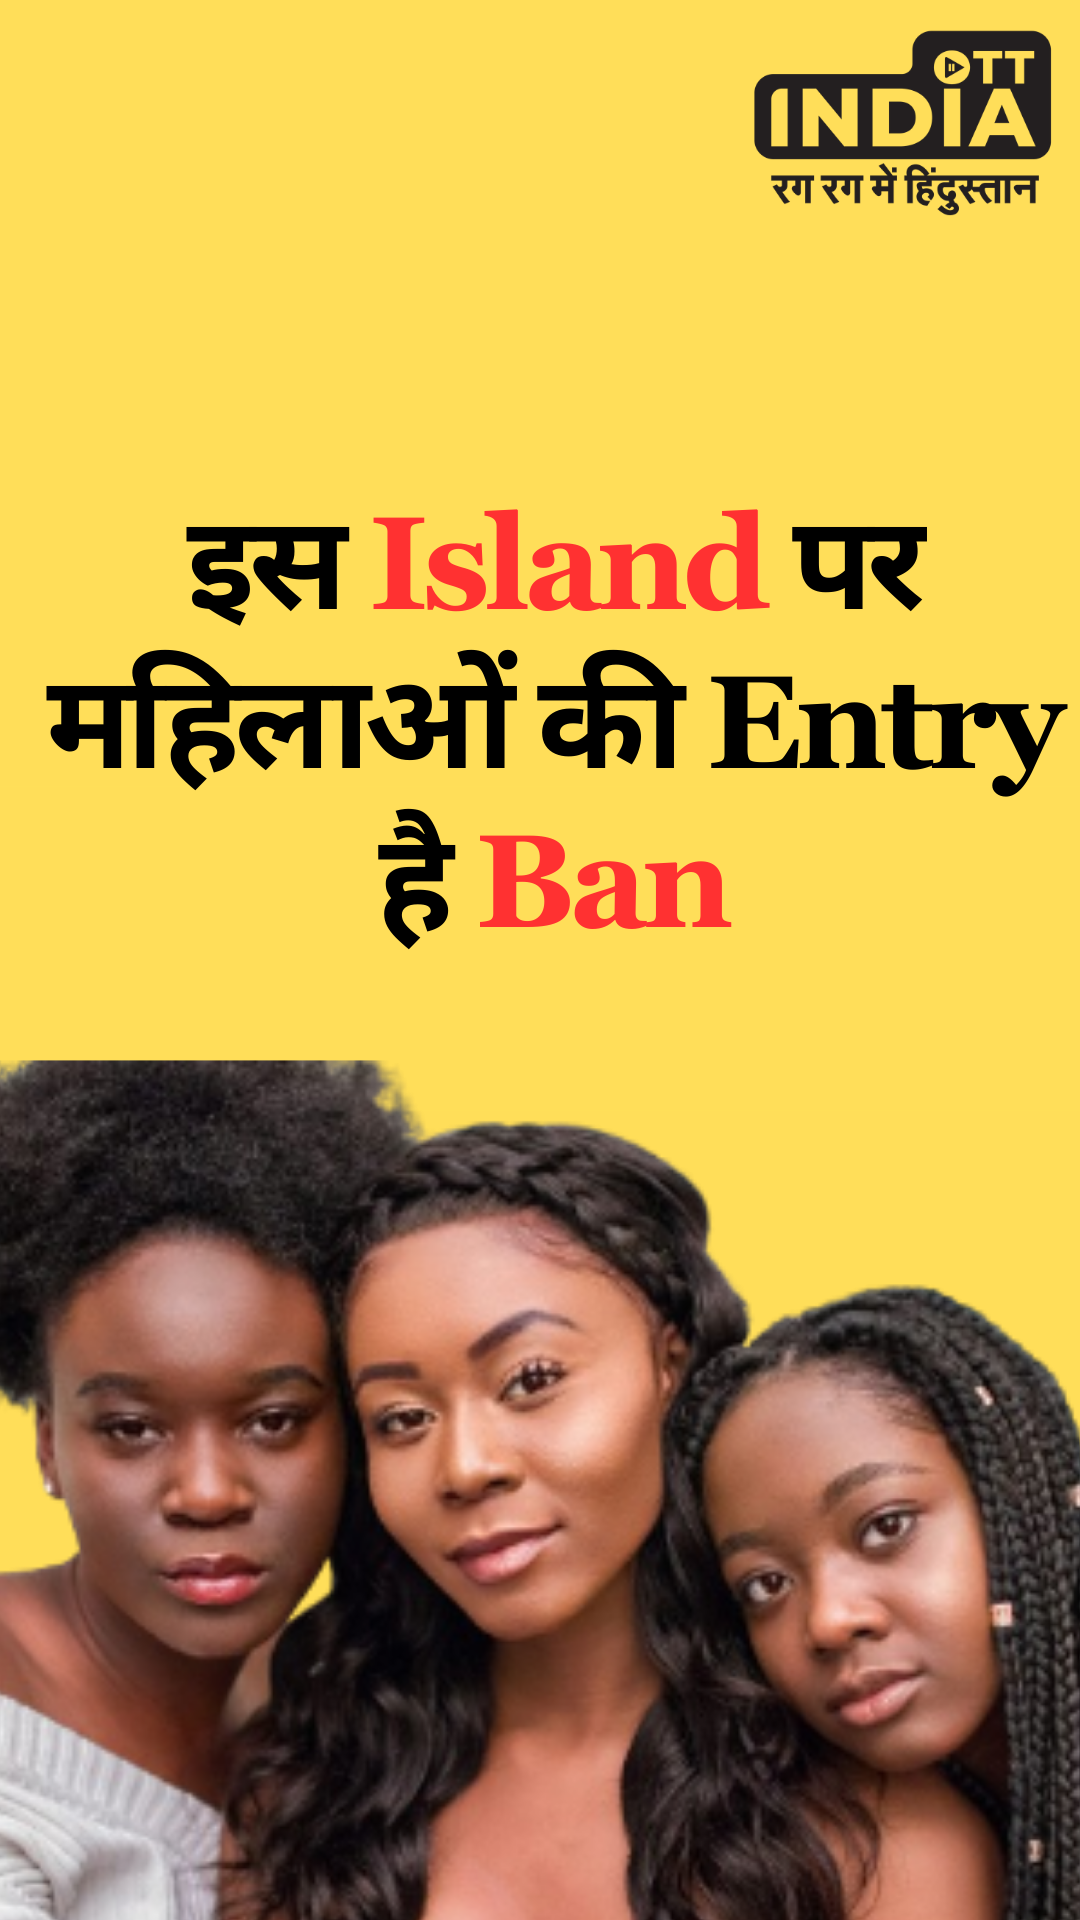 इस Island पर महिलाओं की Entry है Ban